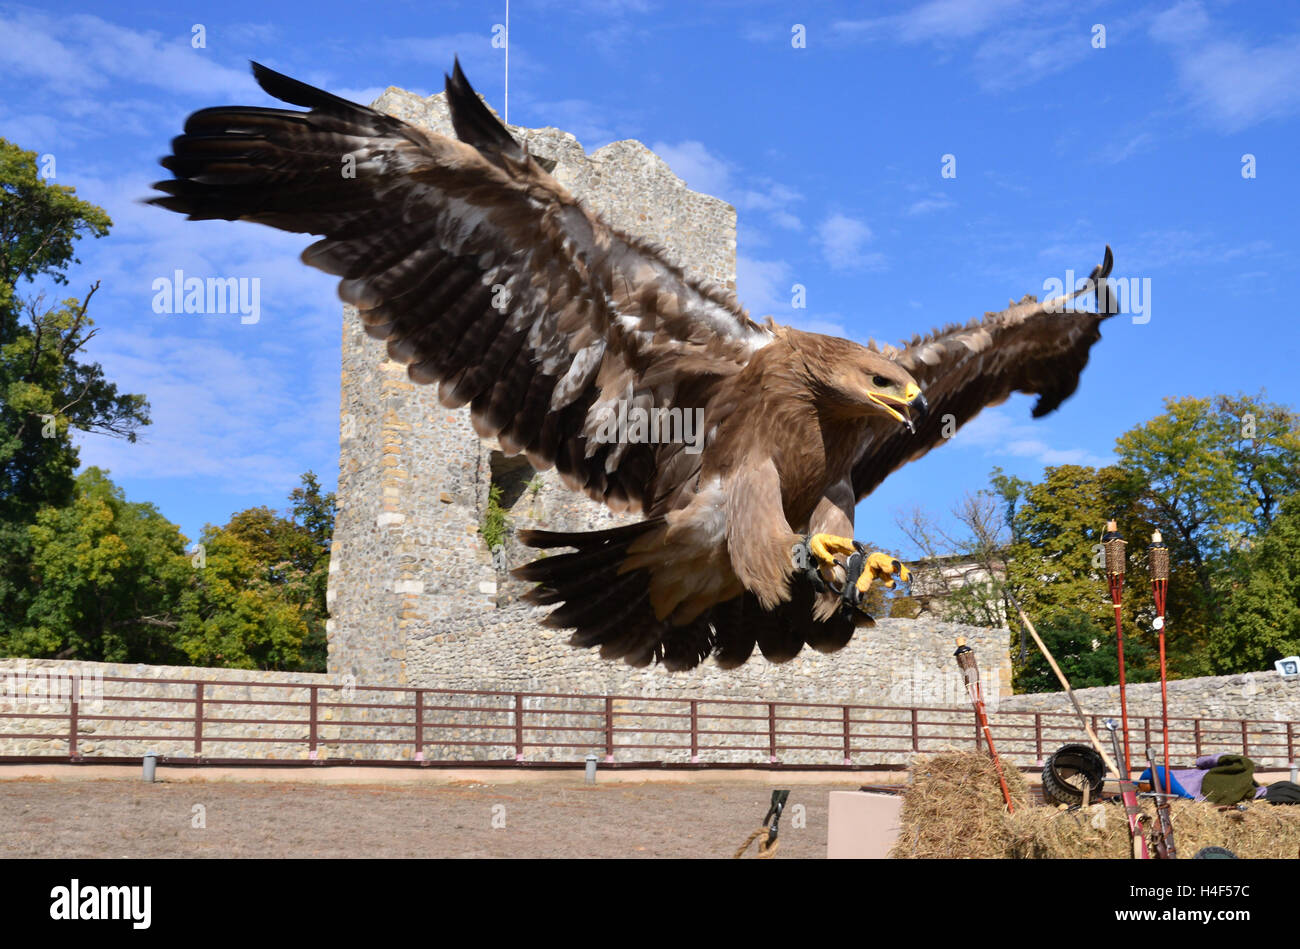 Flying hawk attacco dettagli su sfondo naturale Foto Stock